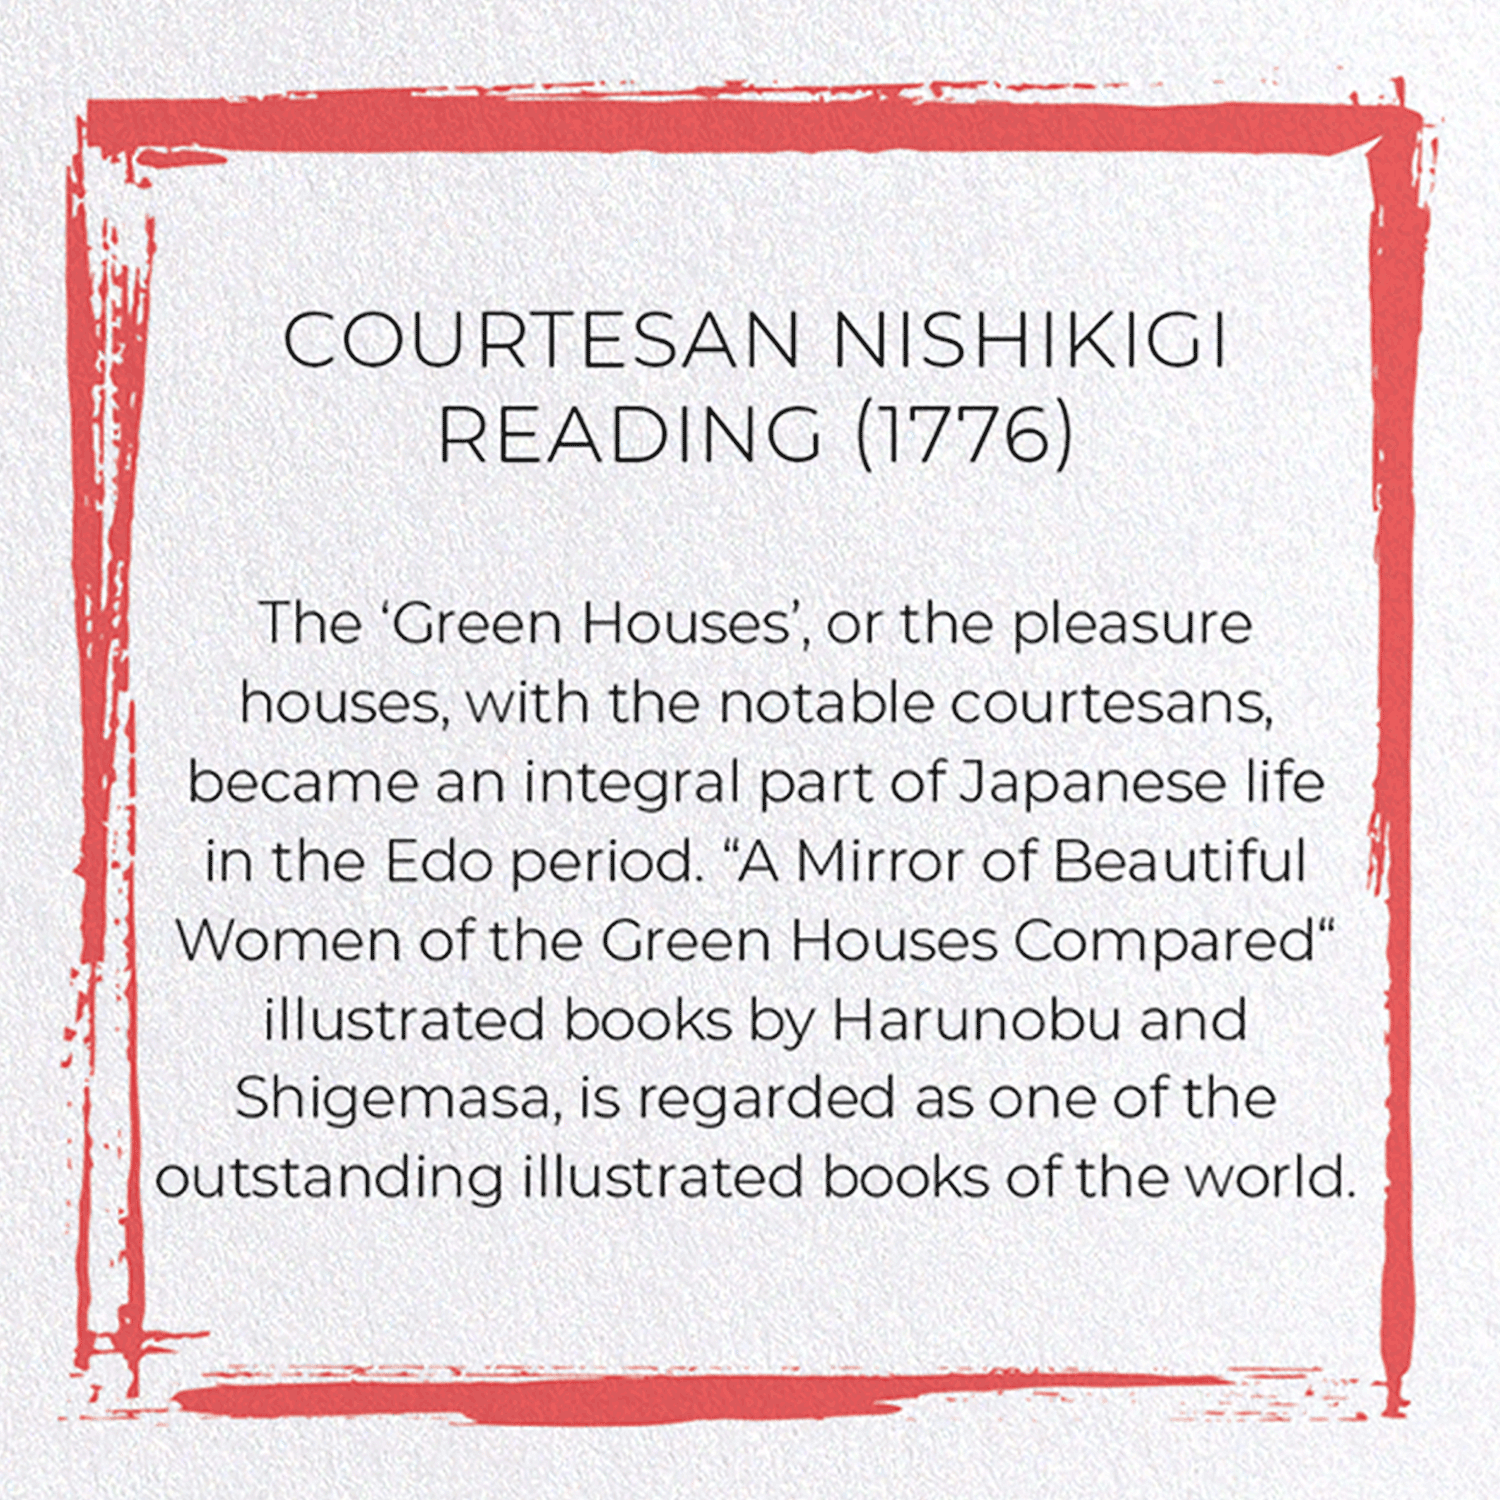 COURTESAN NISHIKIGI READING (1776)